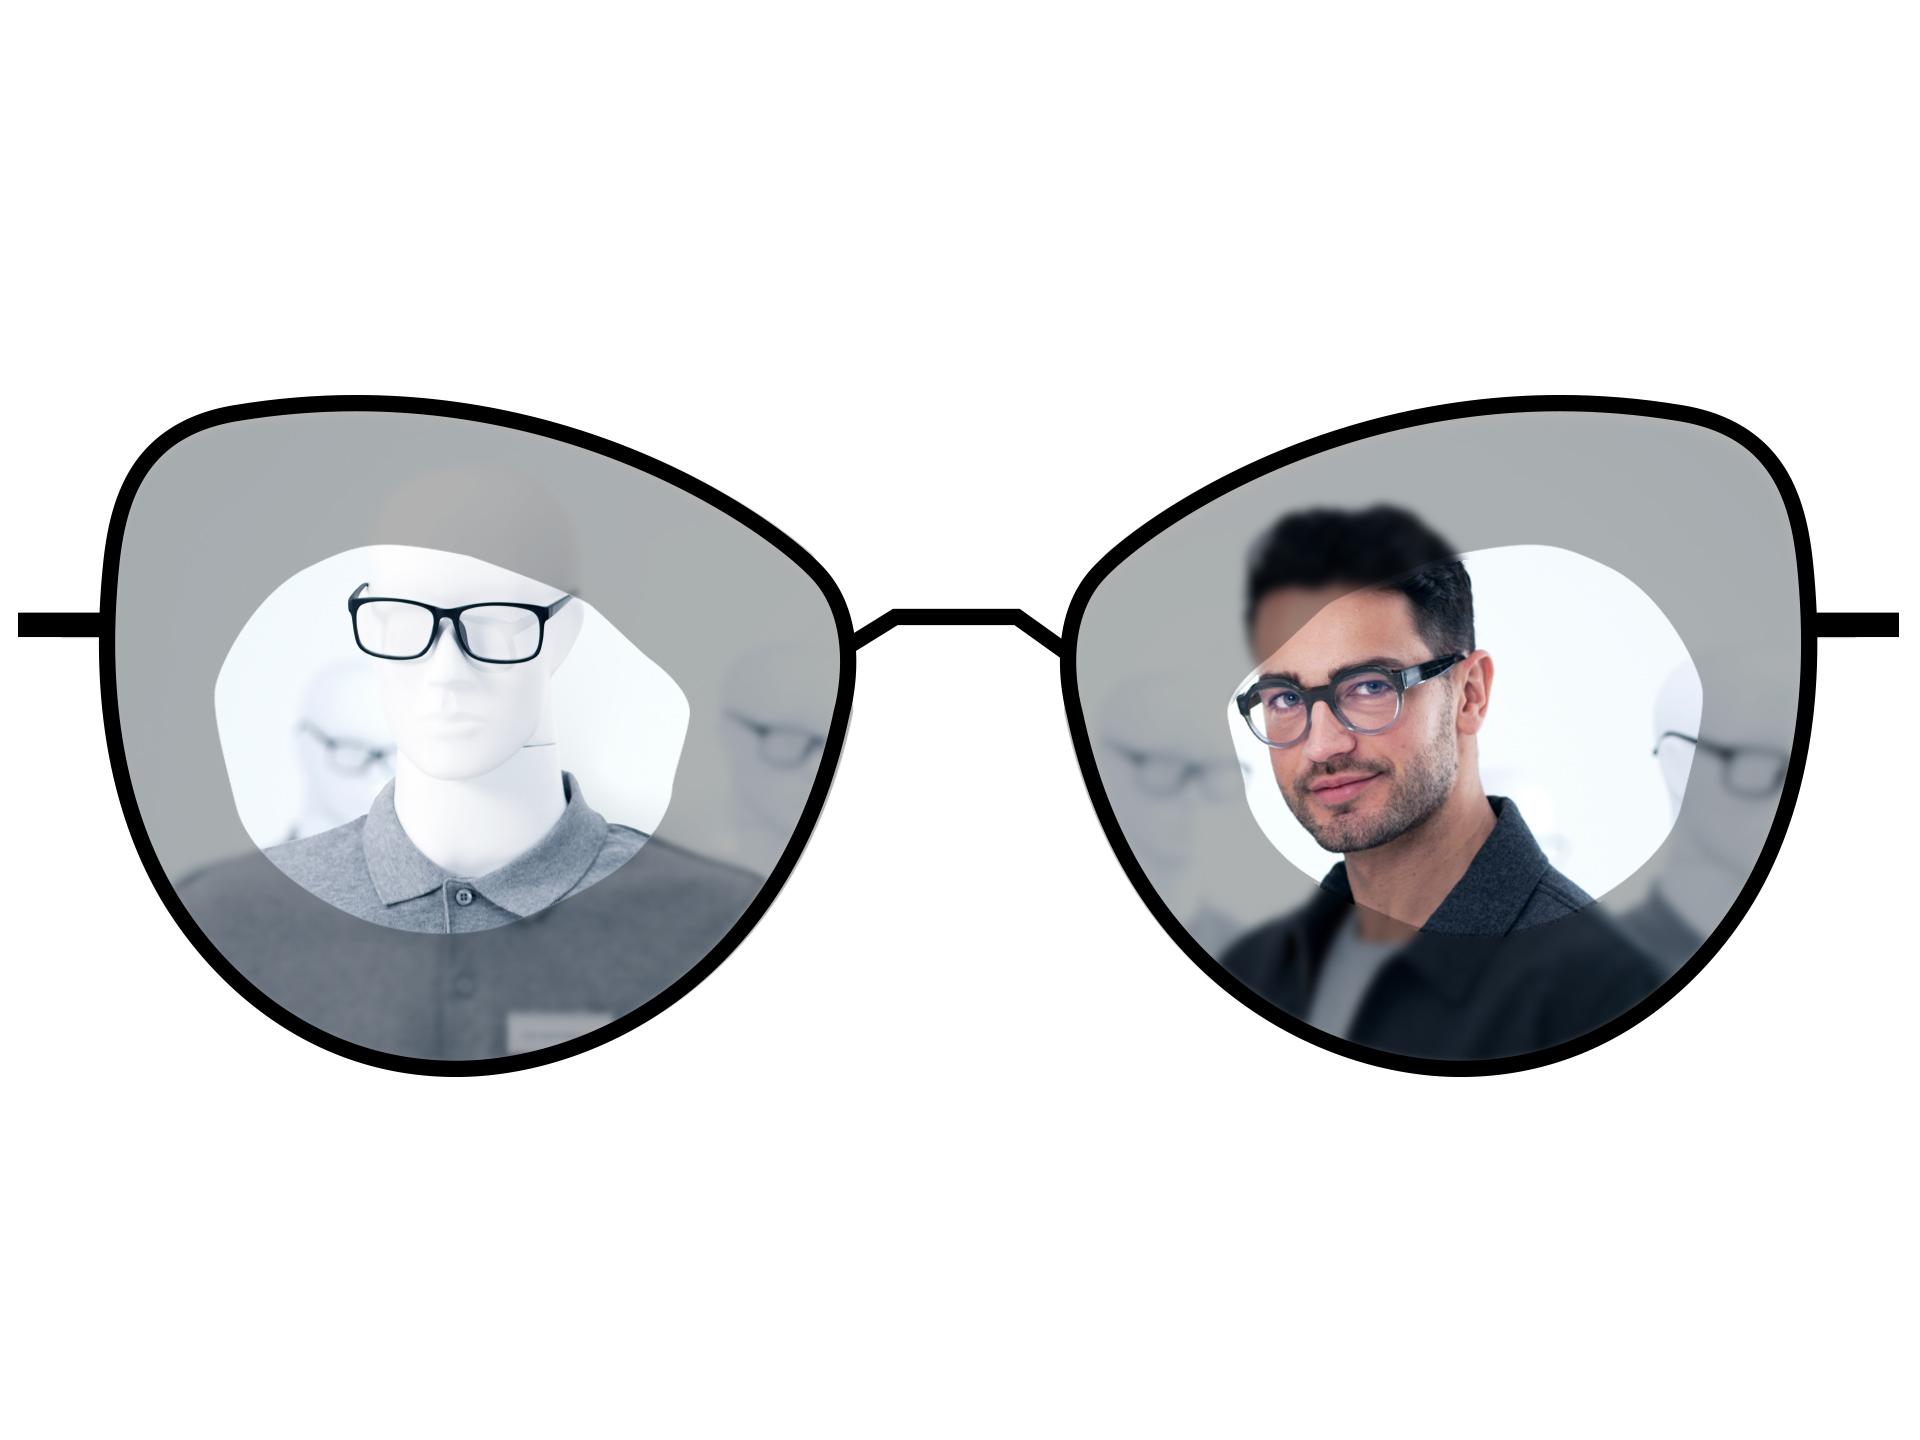 標準的な単焦点レンズのぼやけて見える範囲と、ZEISS ClearView単焦点レンズの広く明瞭に見える範囲を比較して示す、メガネのイラスト